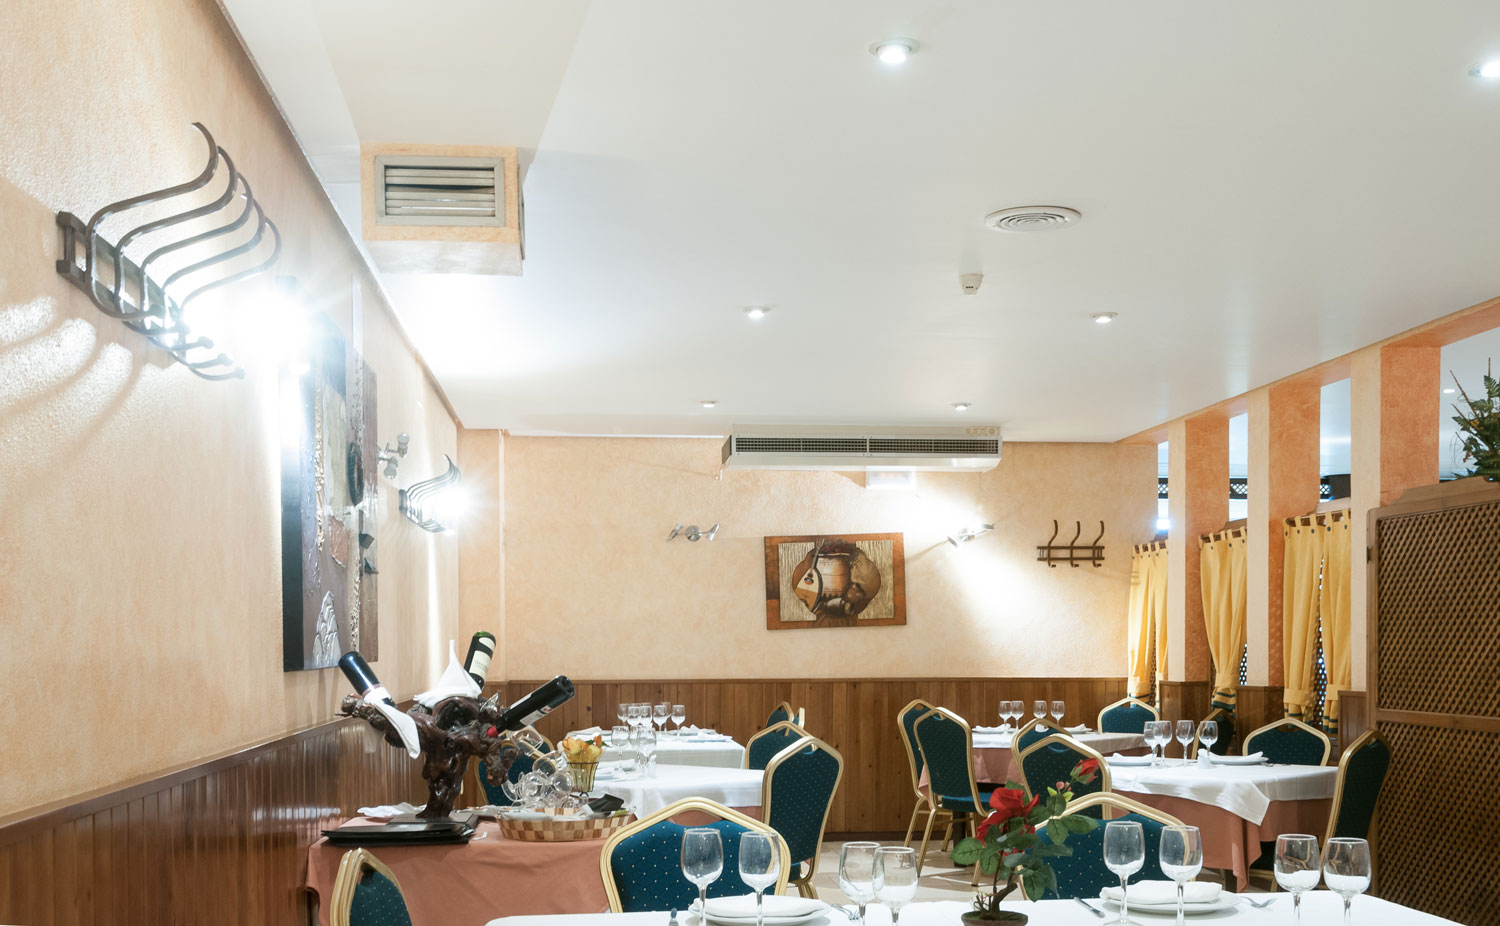 Restaurante Insula 92 (Bolaños de Cva. - C.Real)